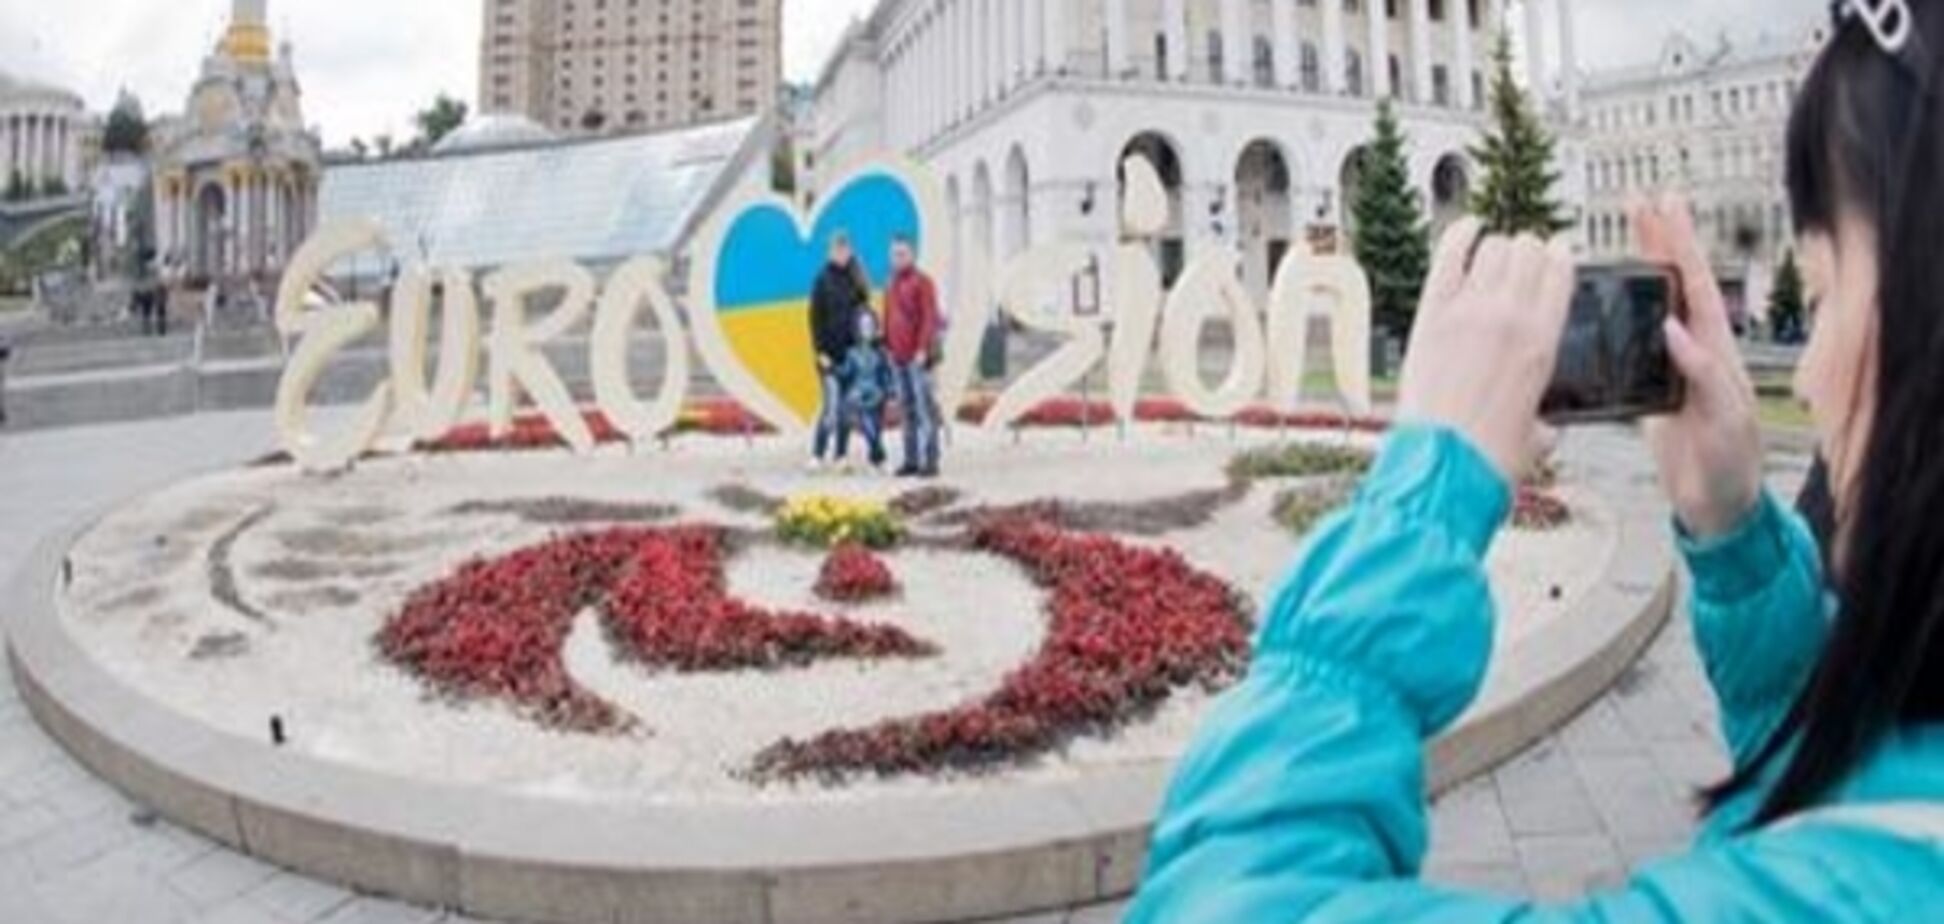 Коментар: 'Євробачення-2017' у Києві - крапку ставити зарано